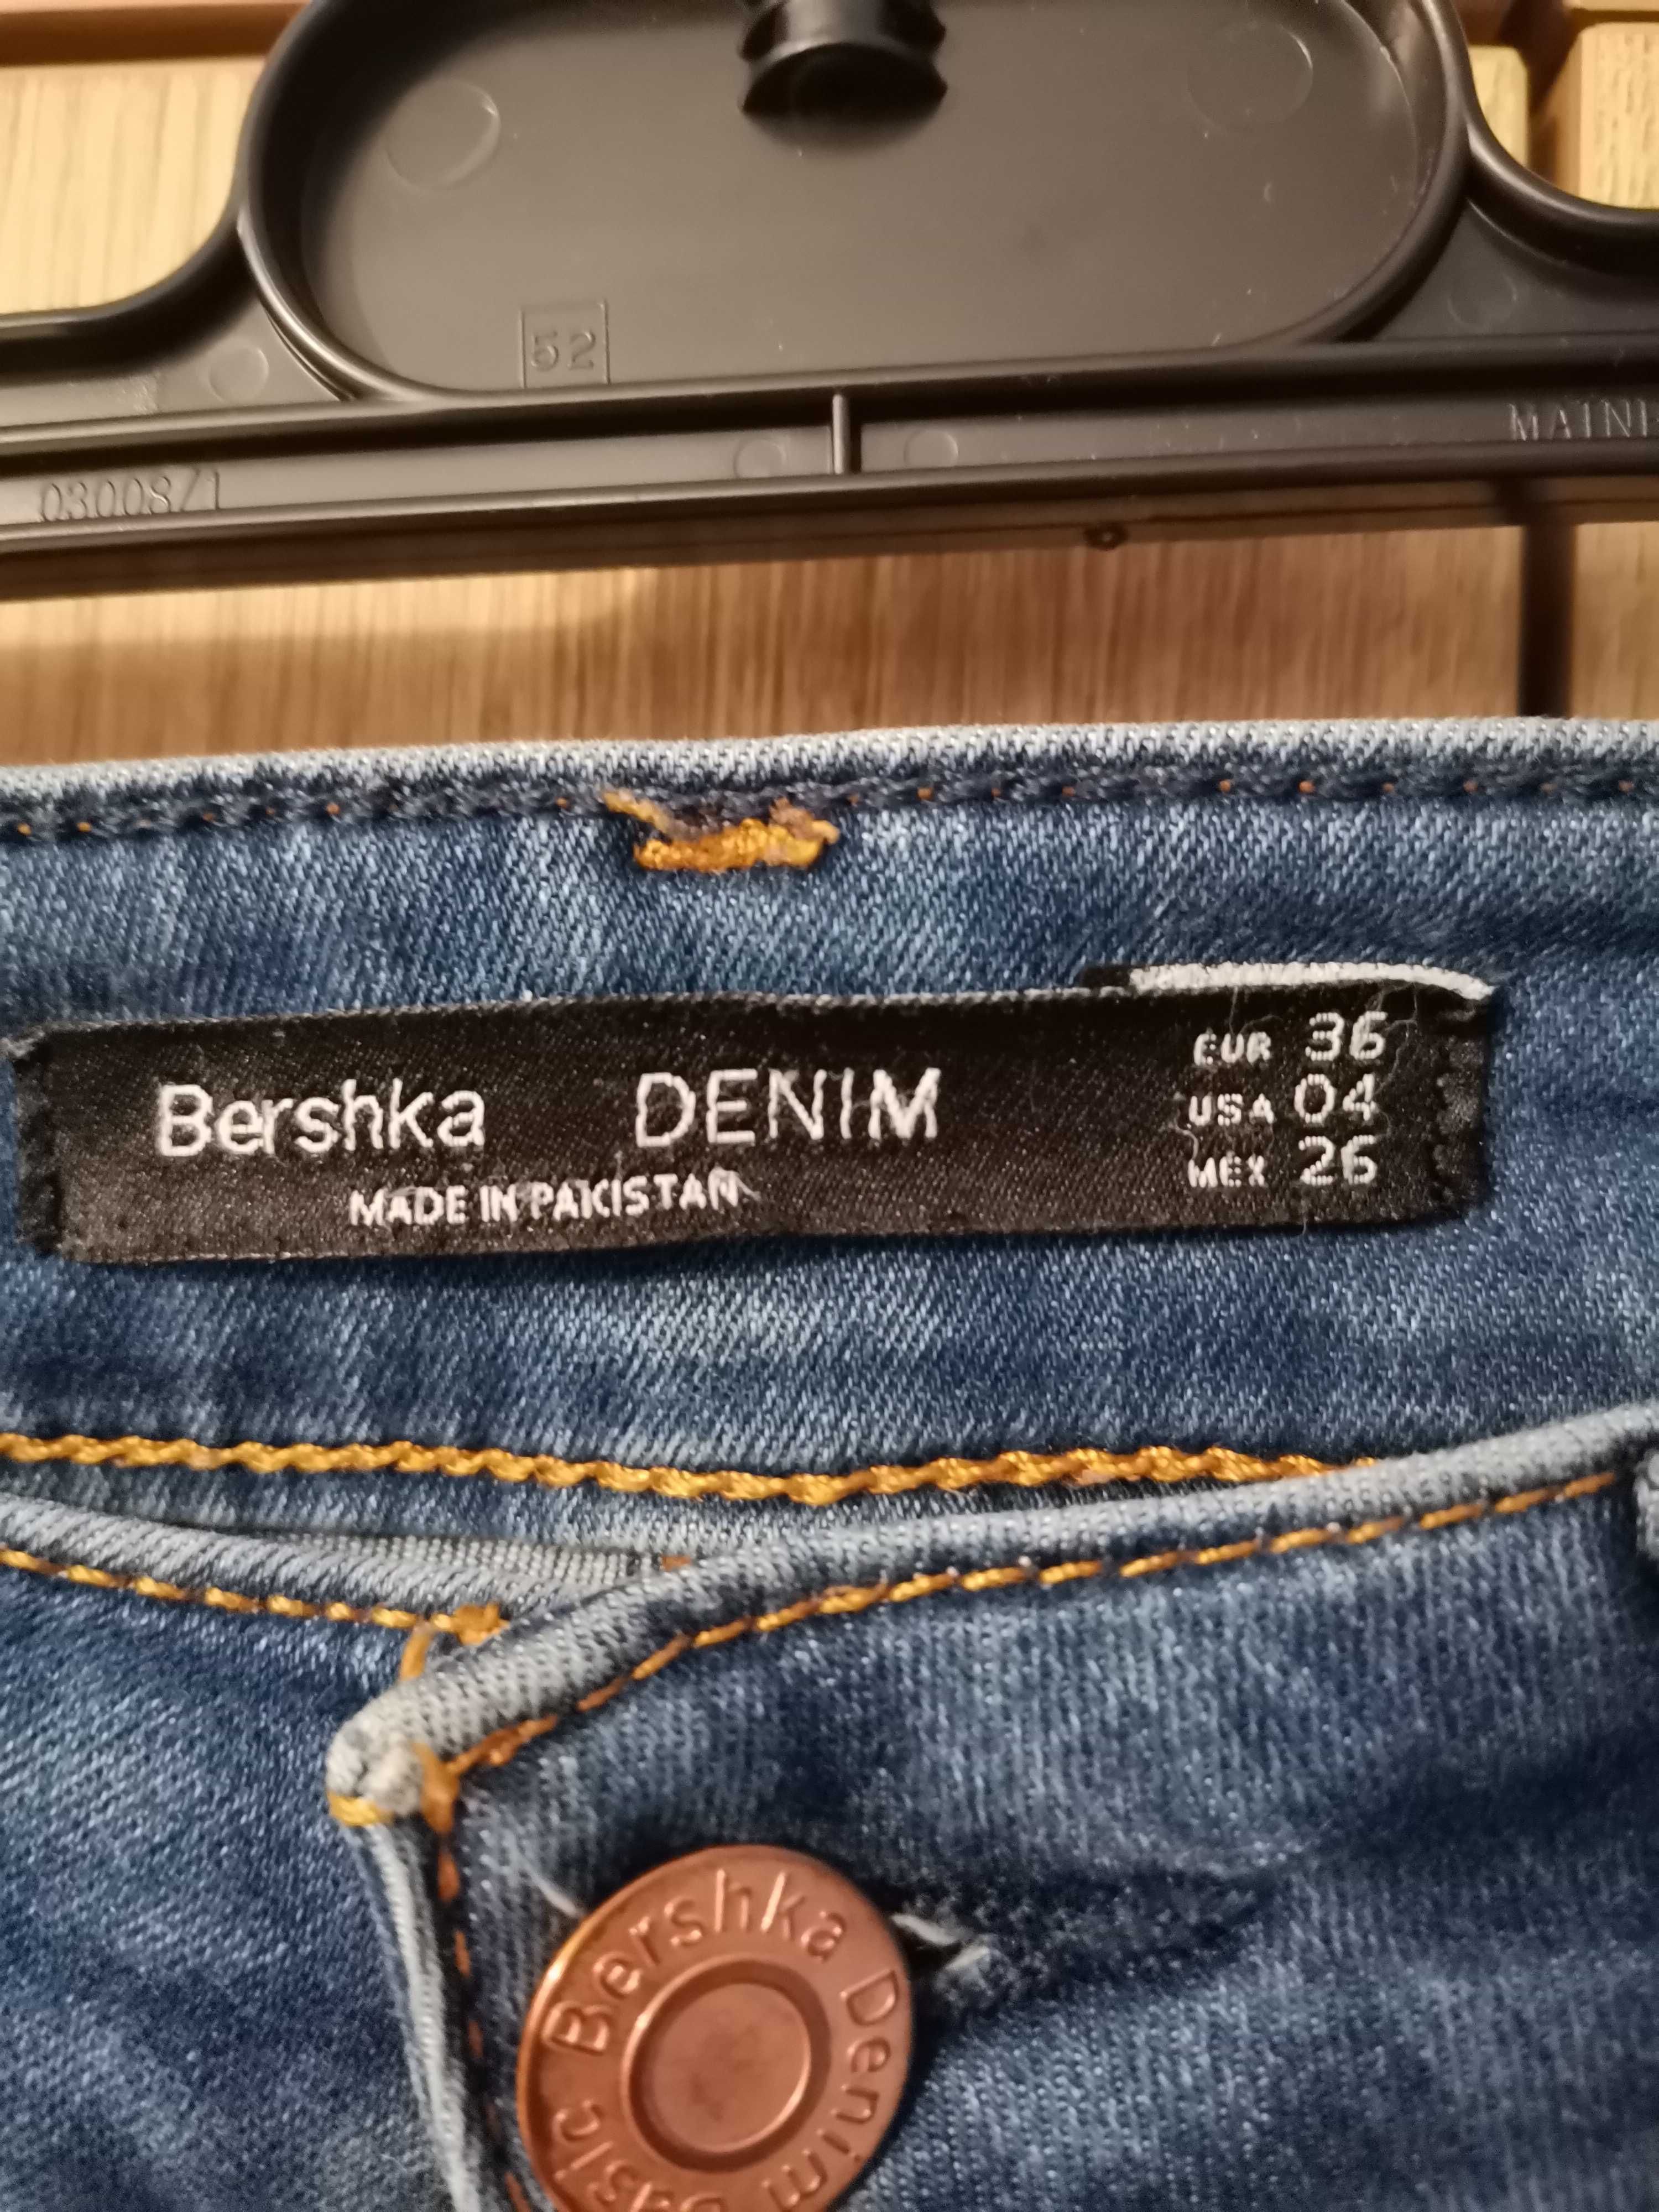 Spodnie dżinsowe Bershka, 36 rozm.